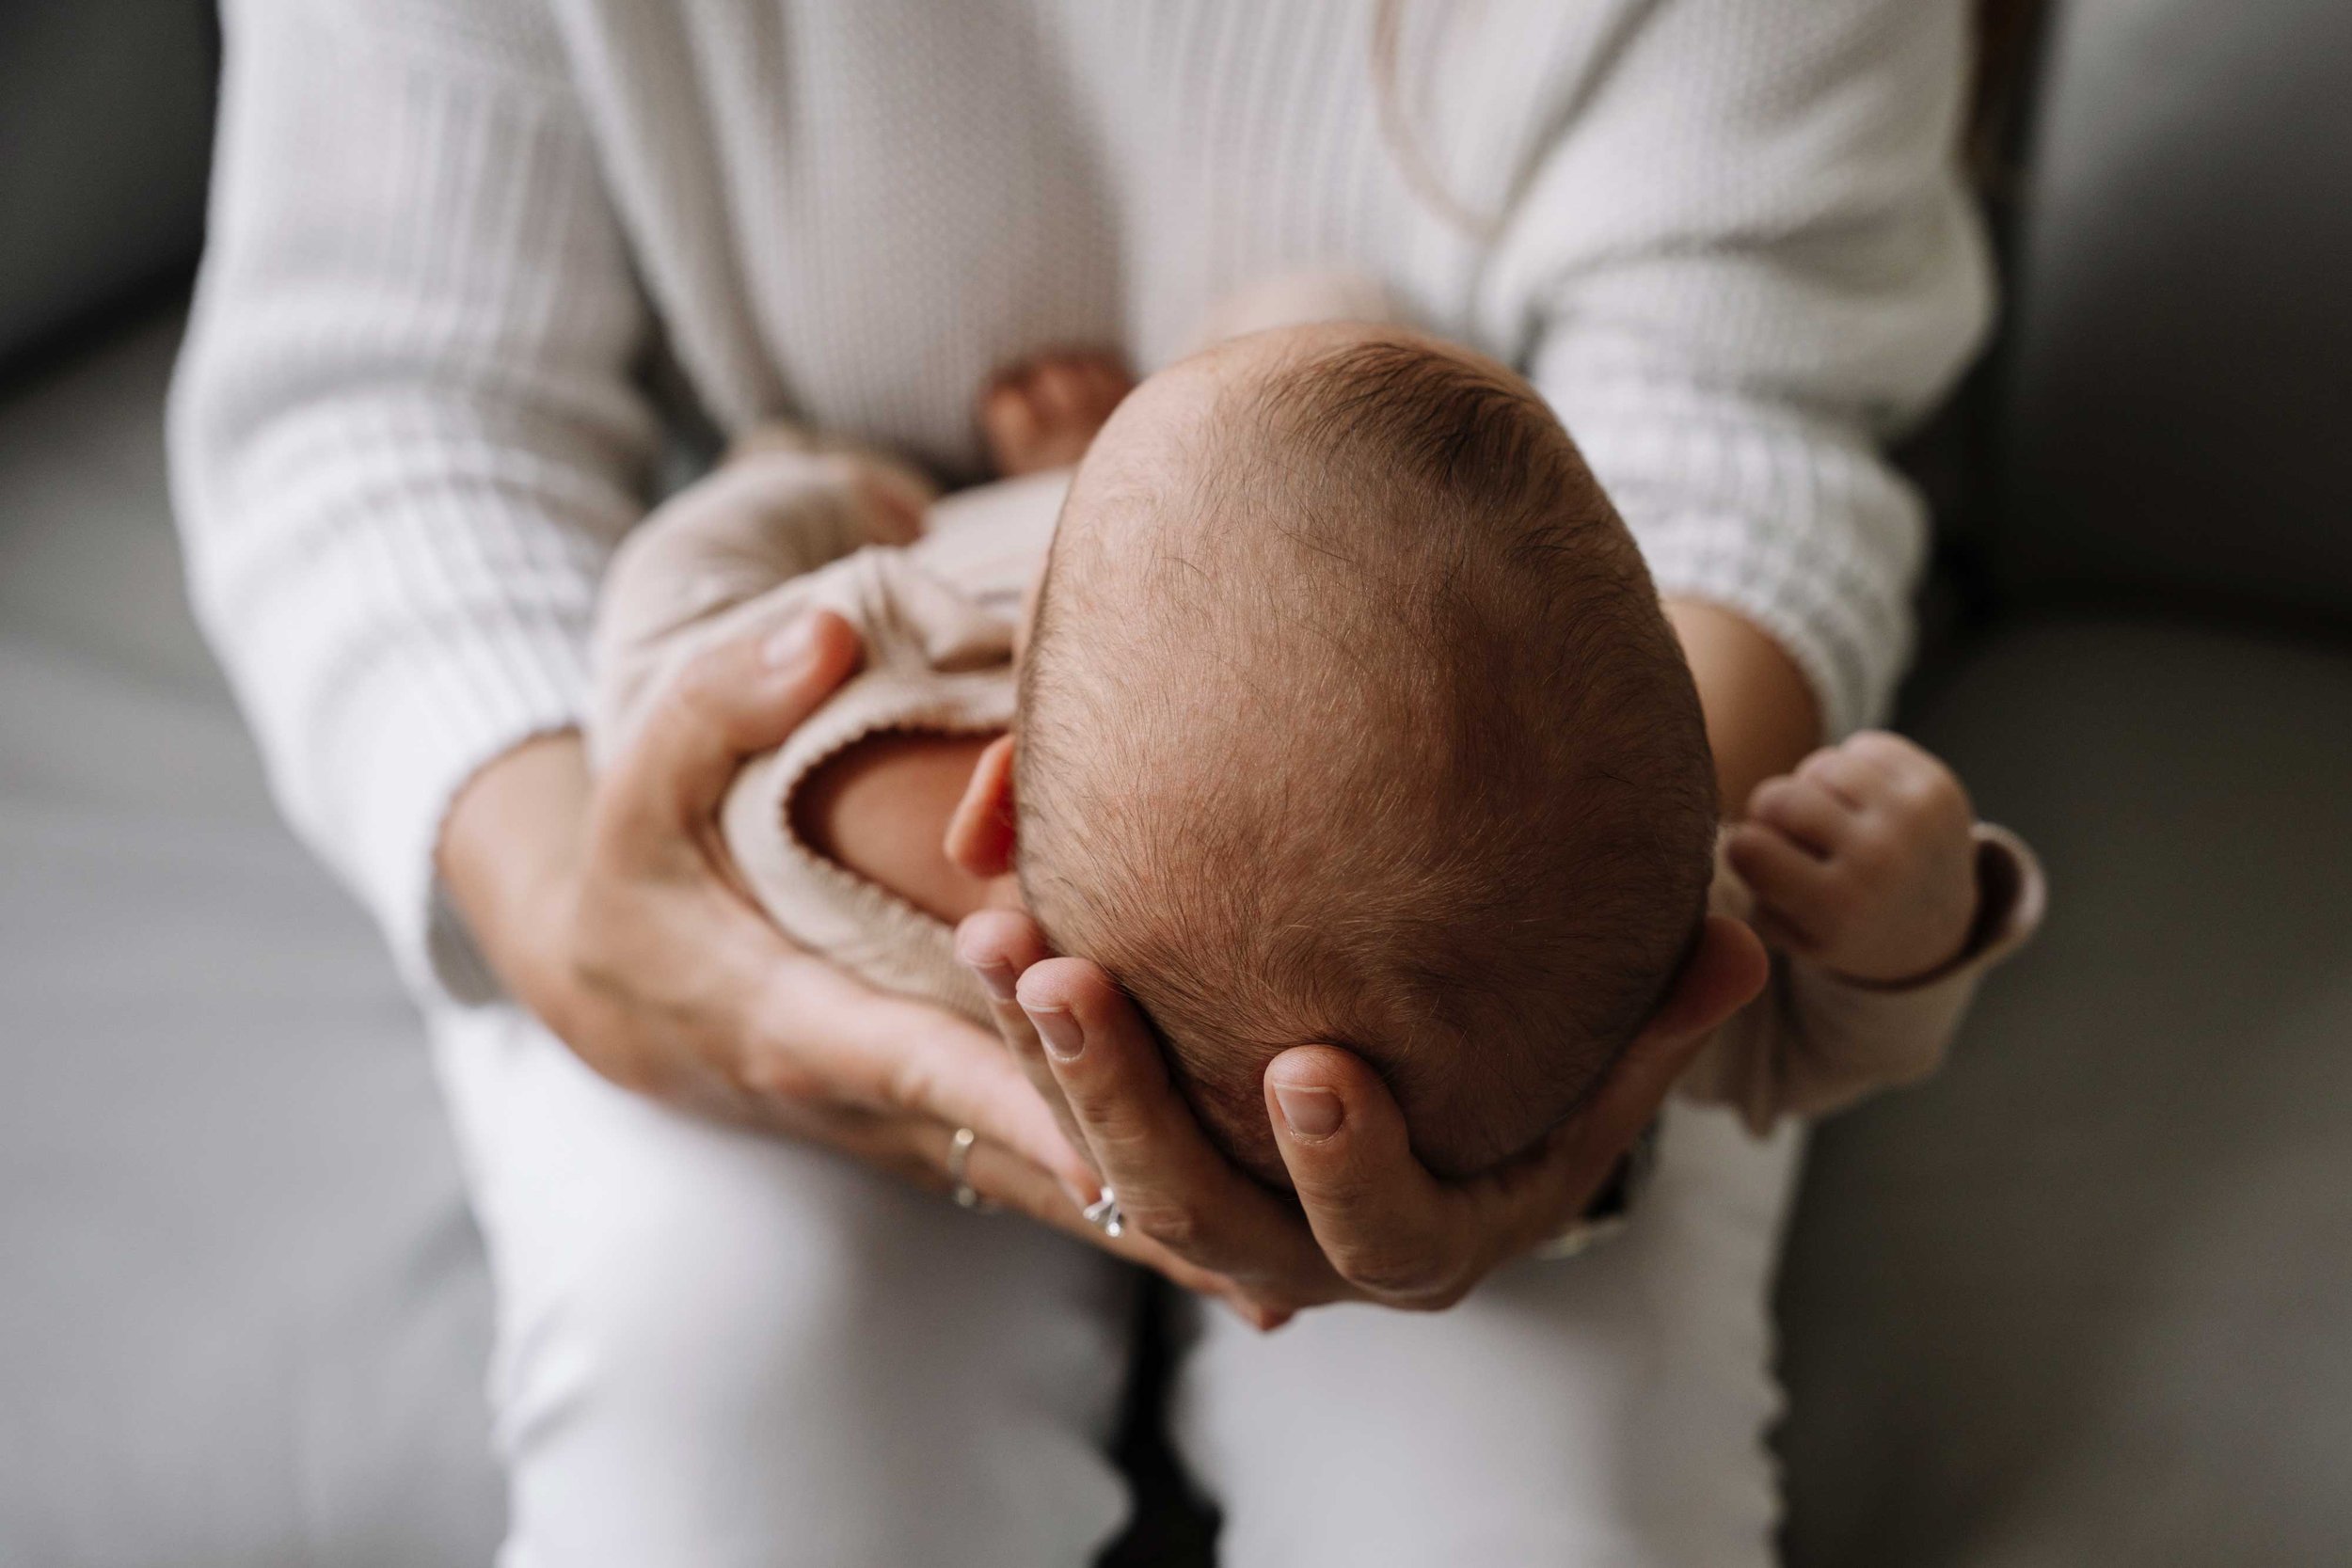 Baby's head cradled in her mother's hands.